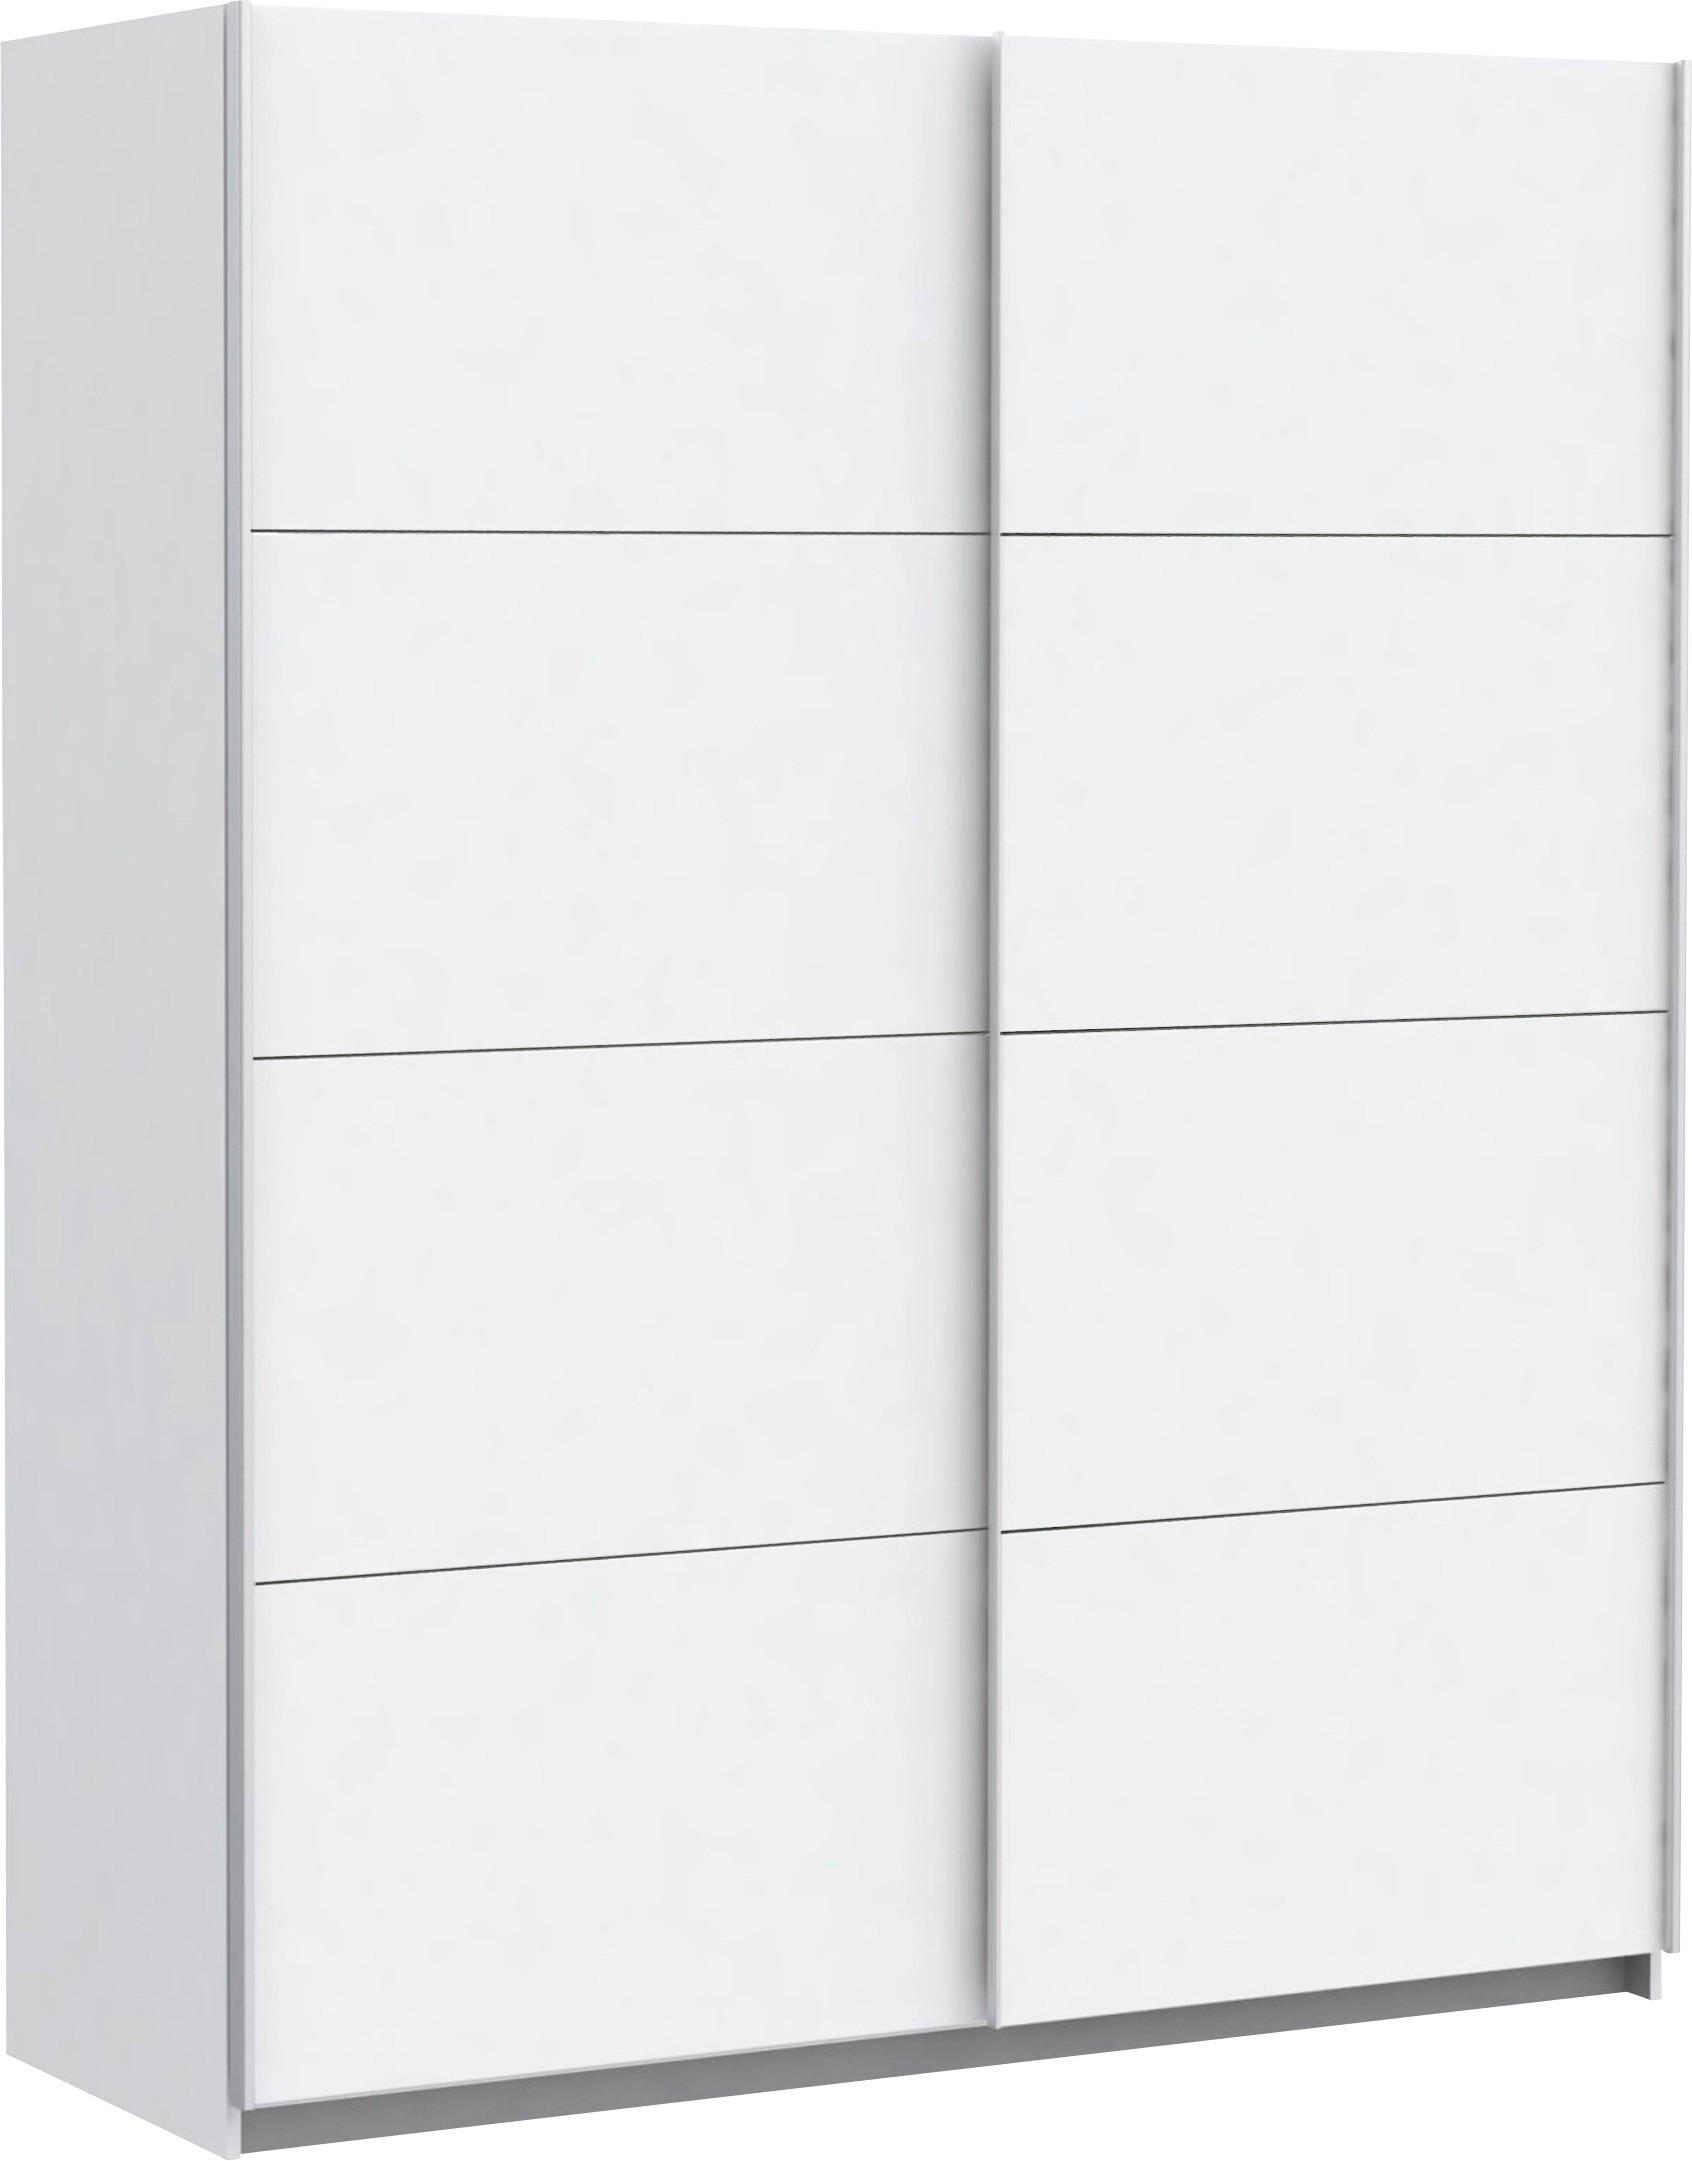 SCHIEBETÜRENSCHRANK 2-türig Weiß  - Silberfarben/Weiß, Design, Holzwerkstoff/Metall (170/210/61cm) - MID.YOU